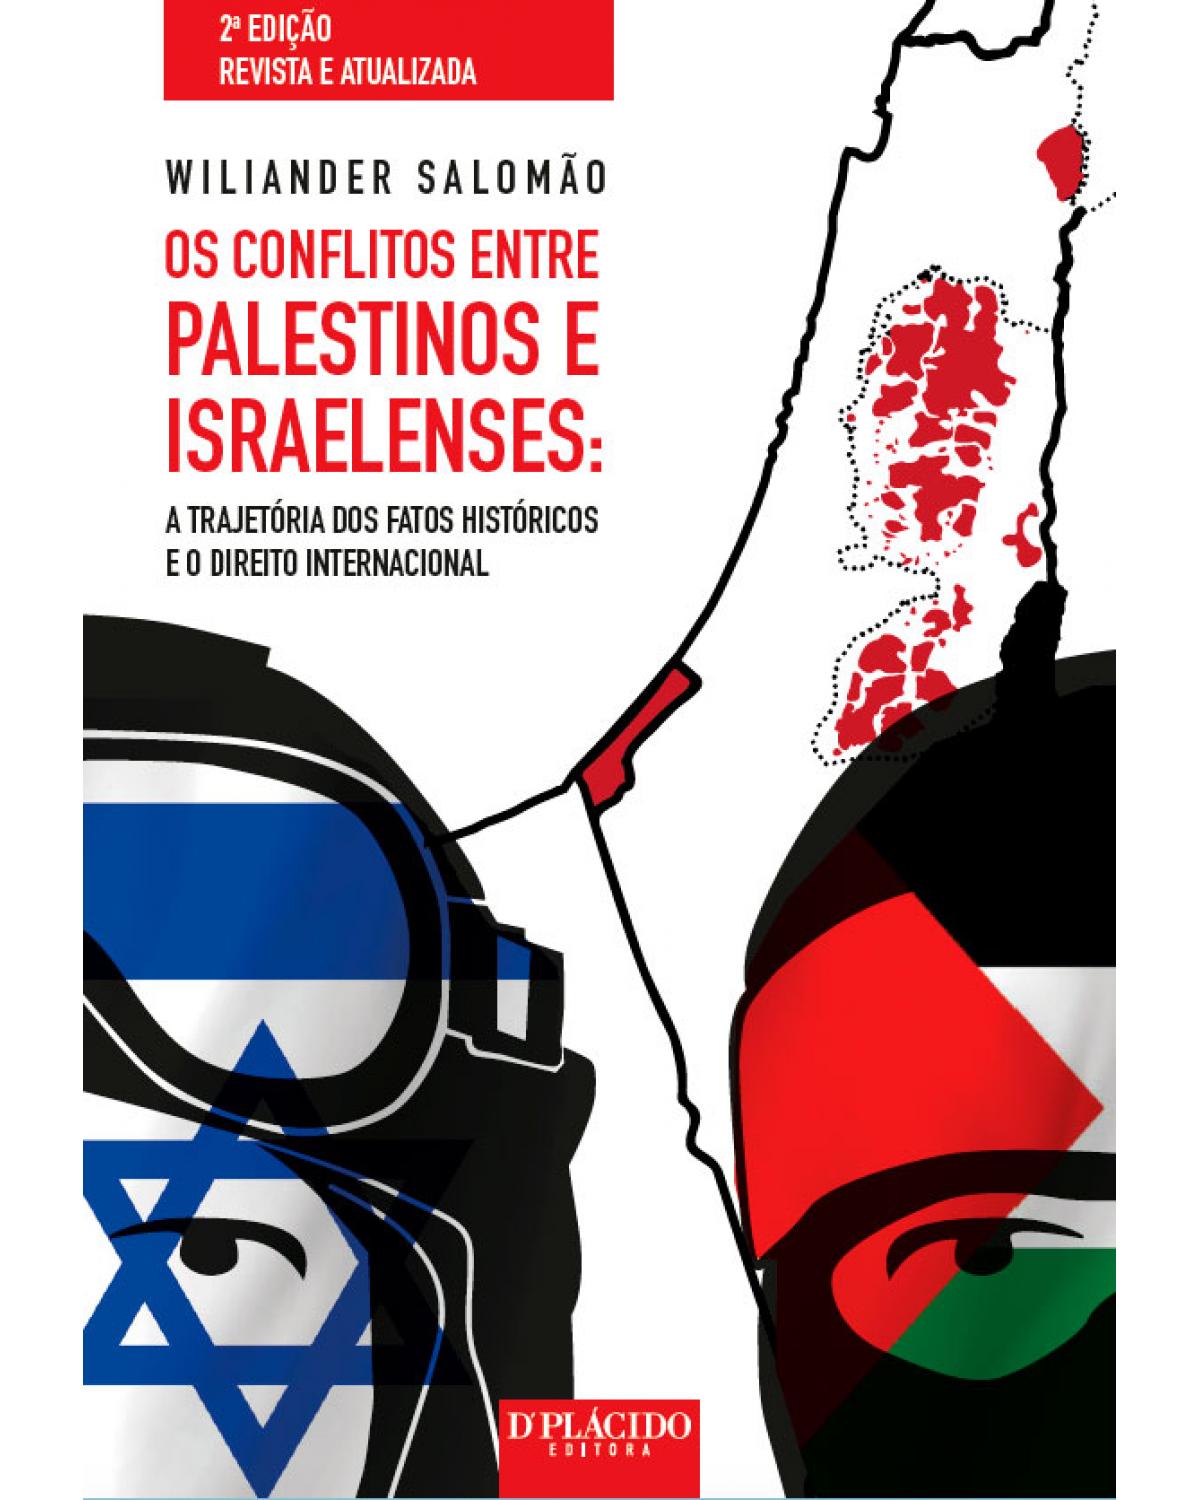 Os conflitos entre palestinos e israelenses: A trajetória dos fatos históricos e o direito internacional - 2ª Edição